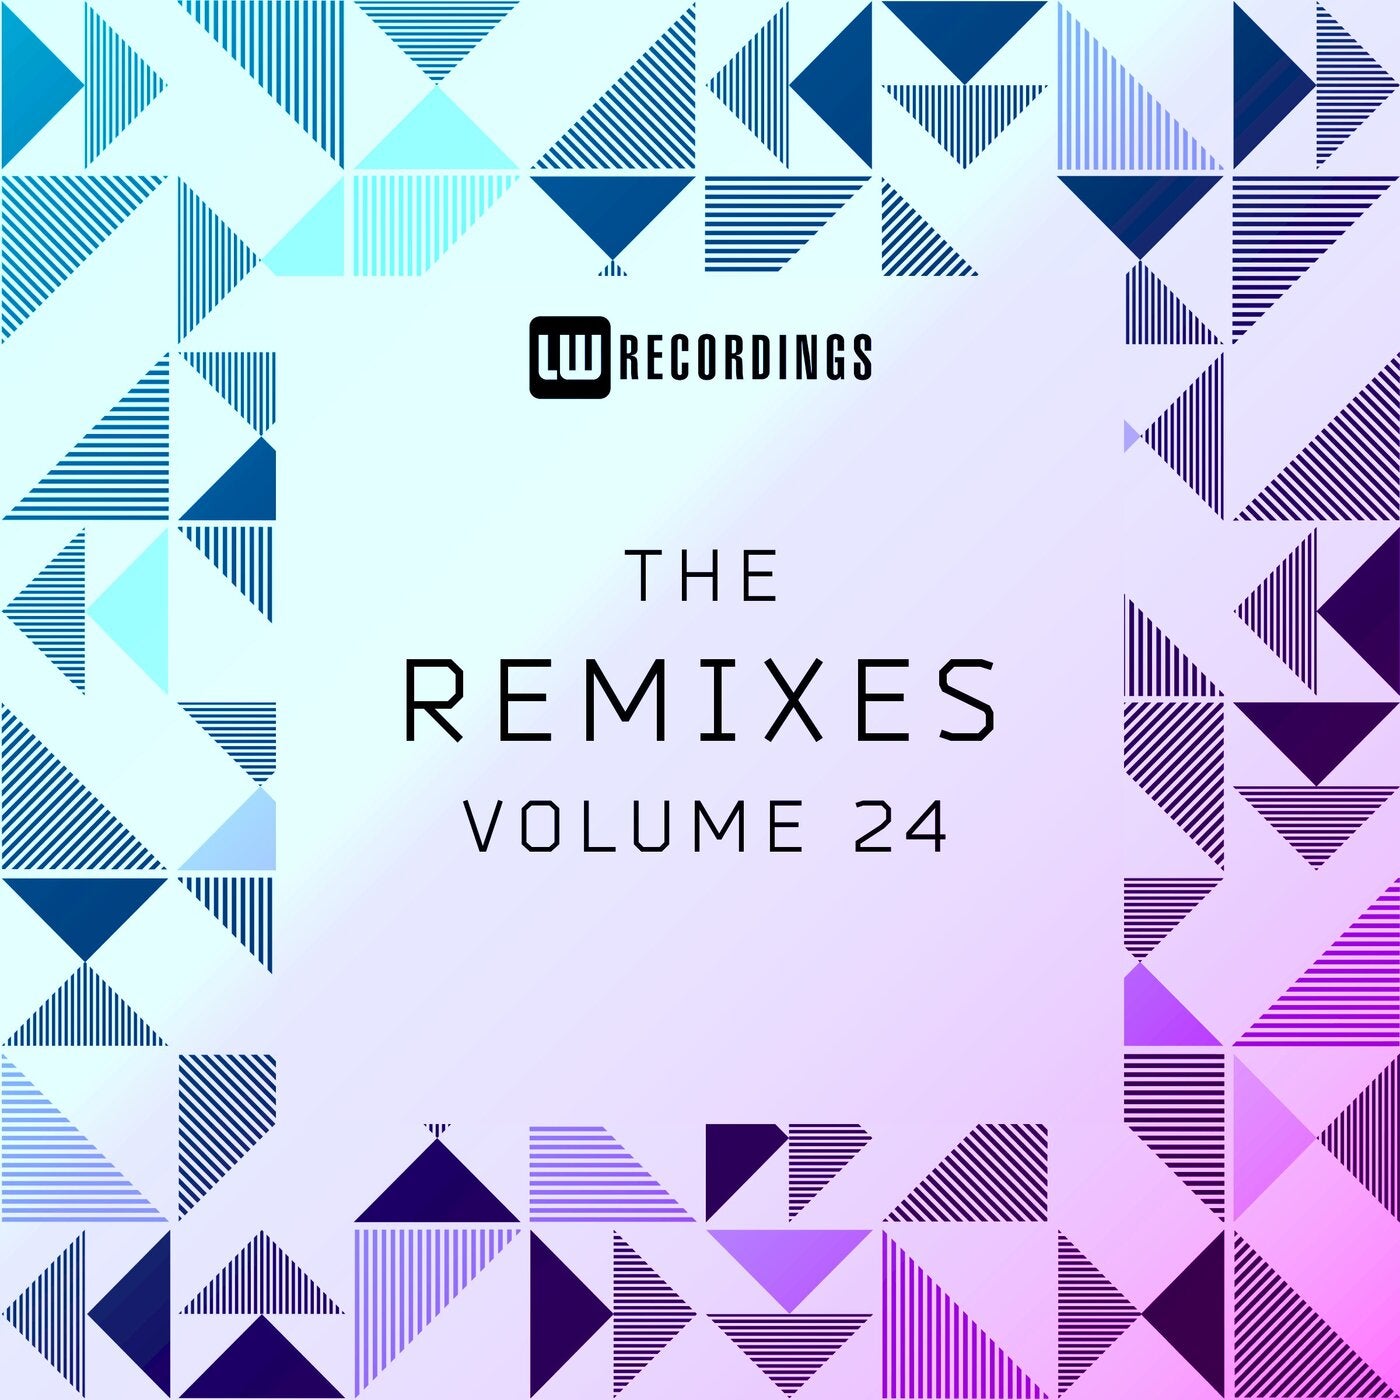 The Remixes, Vol. 24